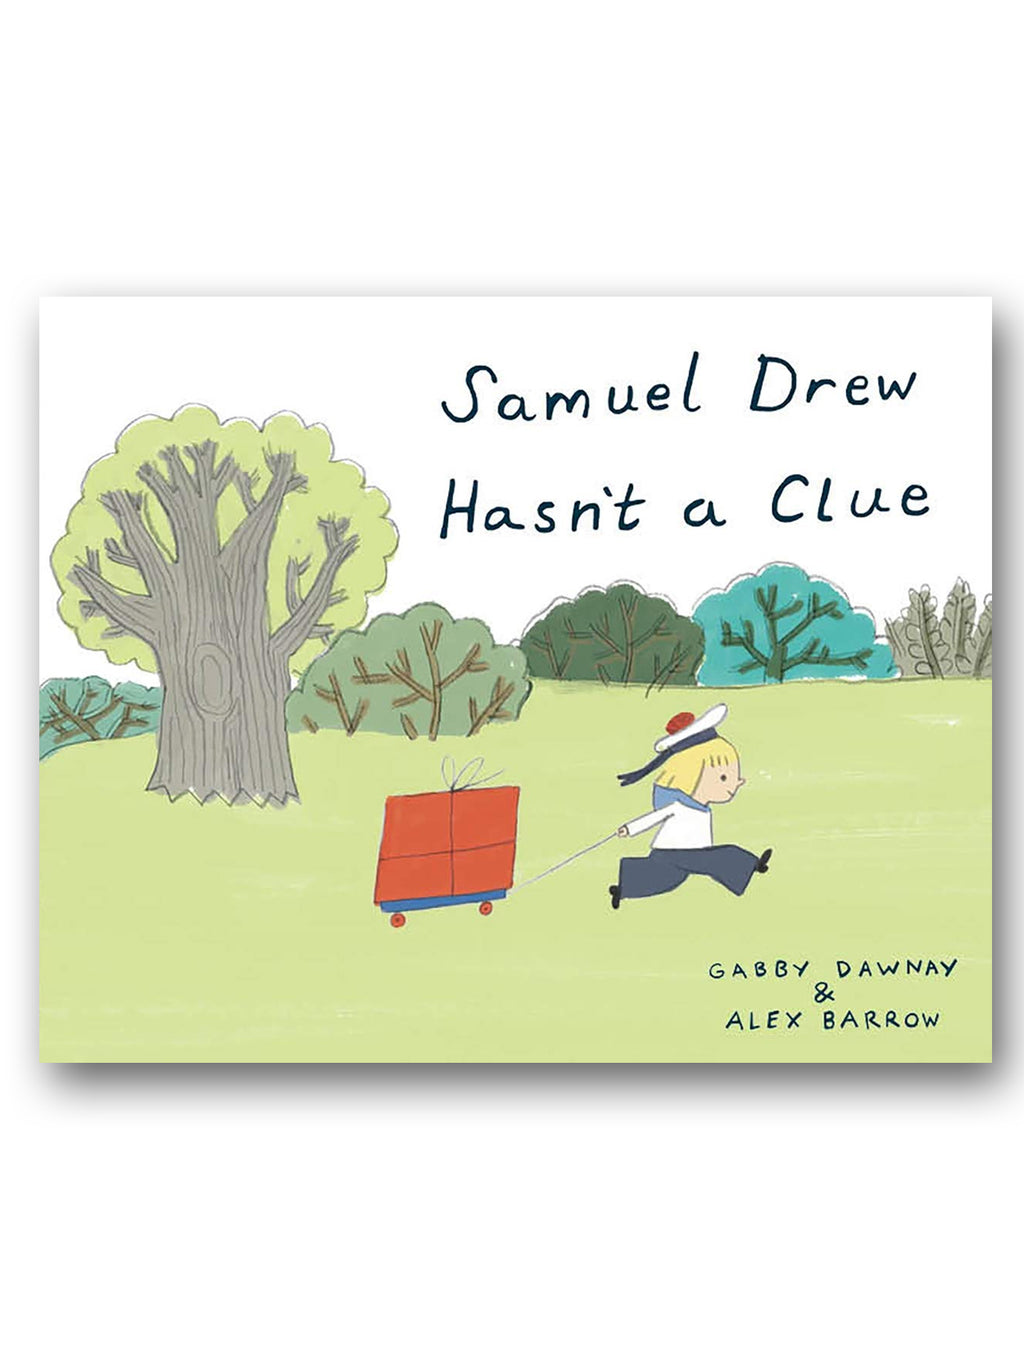 Samuel Drew Hasn't a Clue